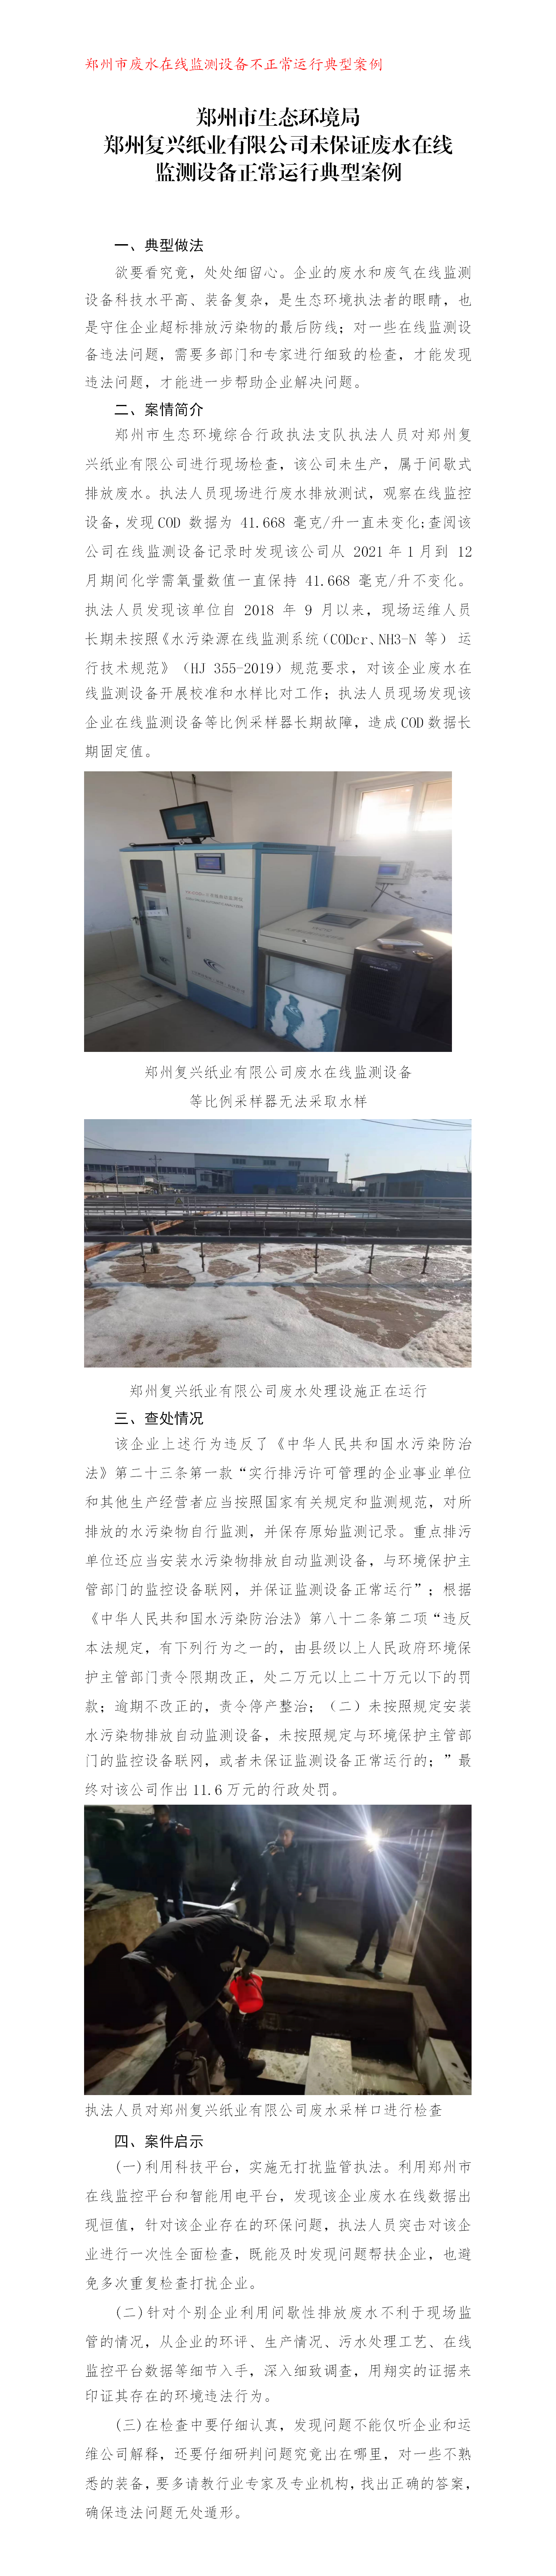 （苏红超）郑州市生态环境局郑州复兴纸业有限公司未保证废水在线监测设备正常运行典型案例_01.png